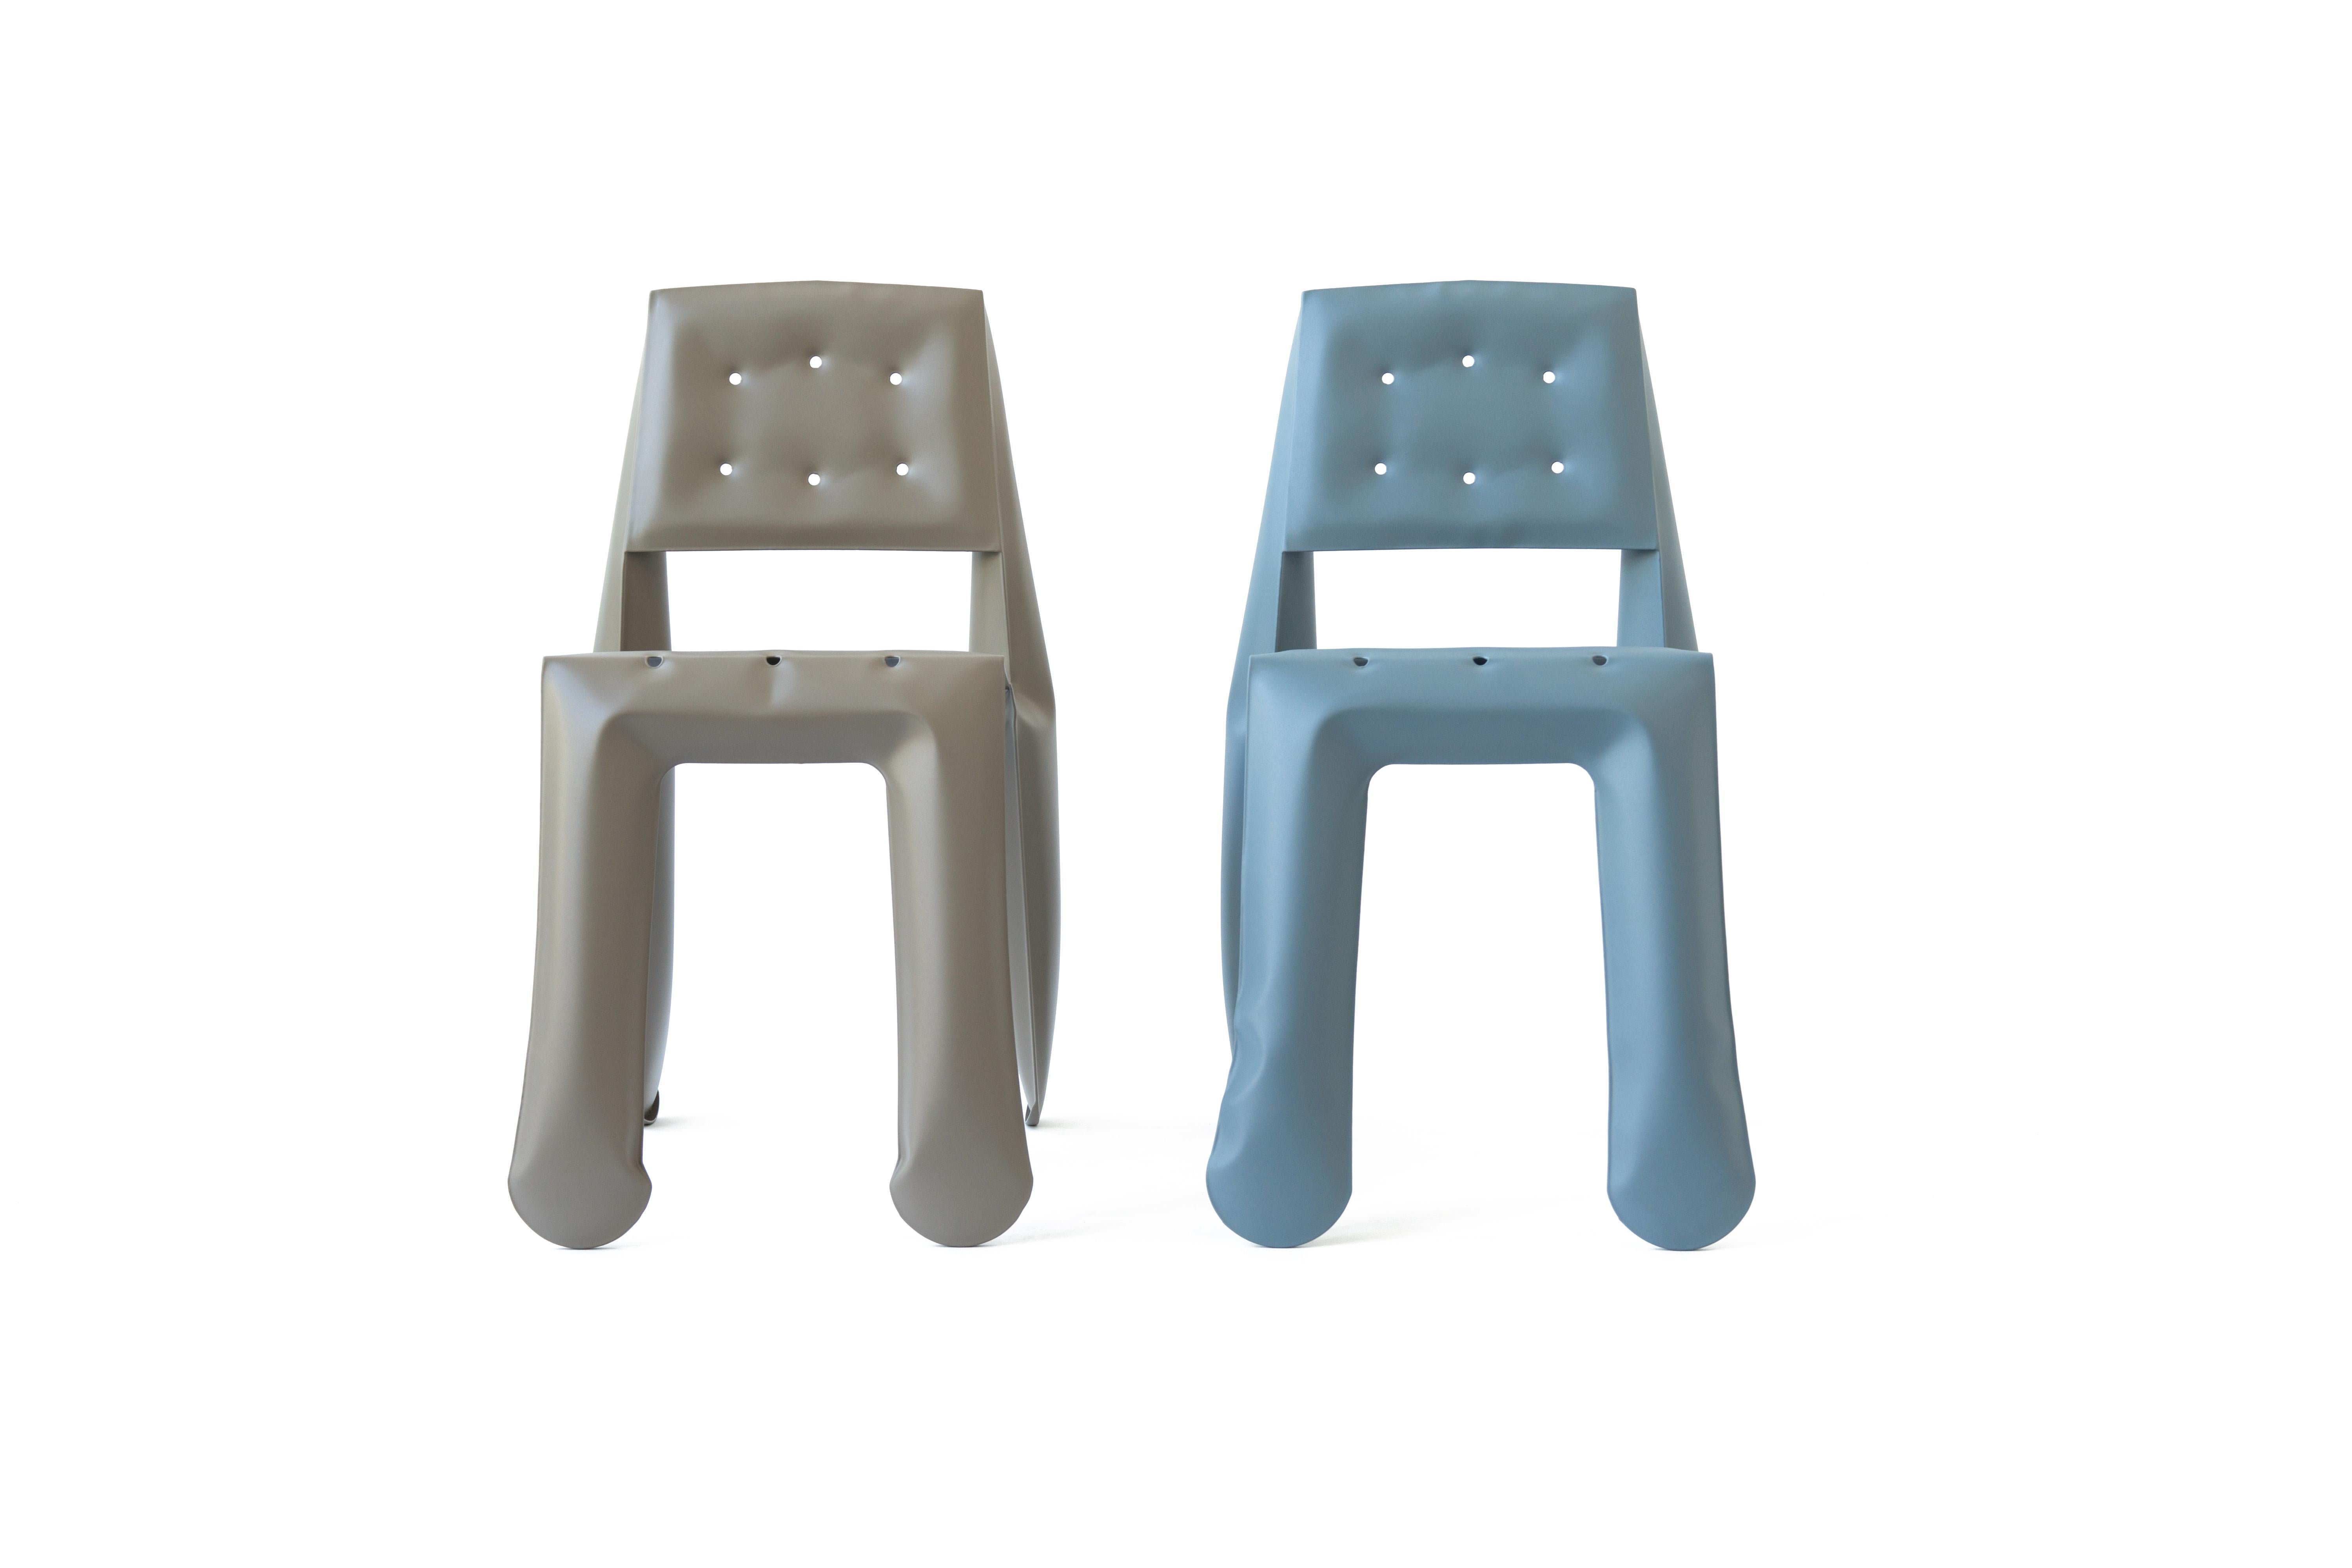 Umbra Grey Aluminum Chippensteel 0.5 Sculptural Chair by Zieta For Sale 3